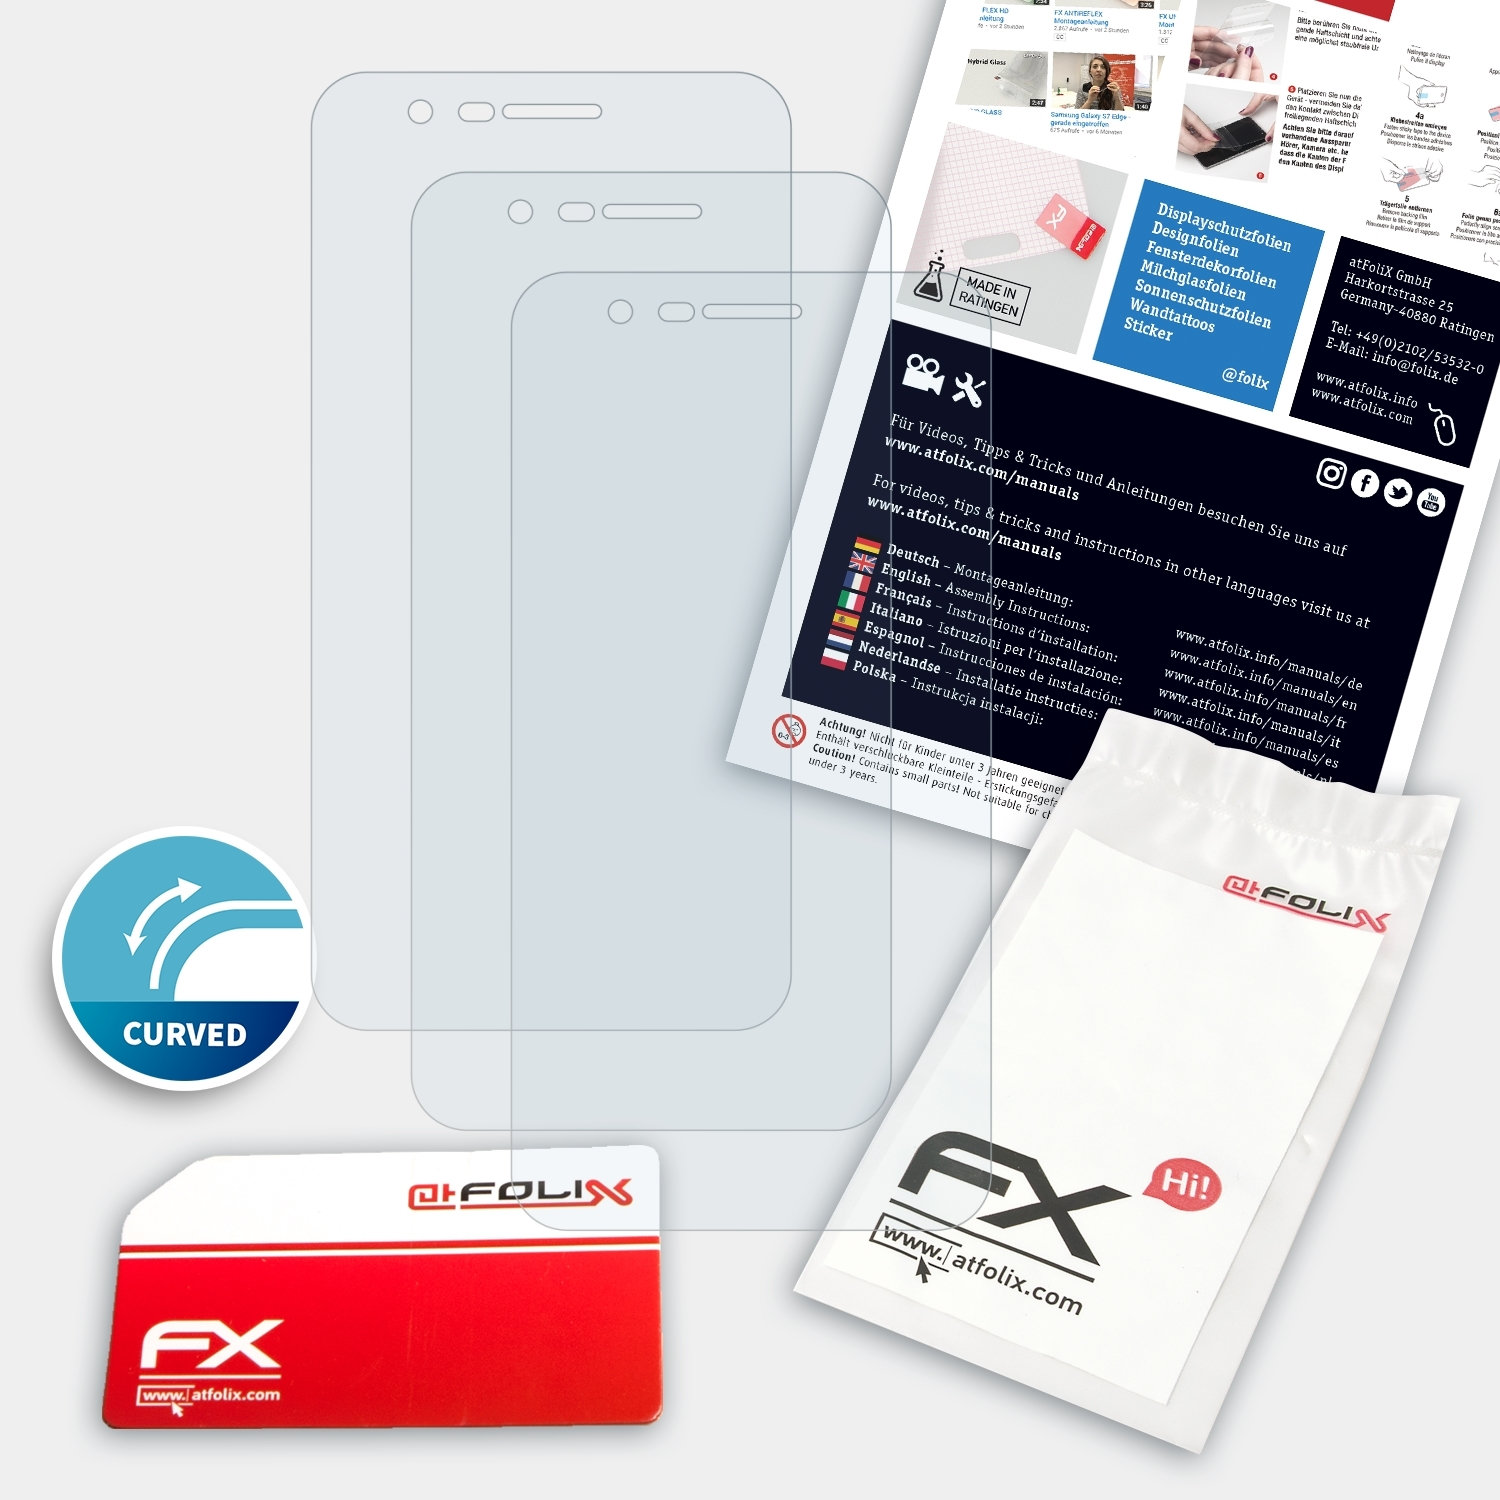 FX-ActiFleX Displayschutz(für K11) LG ATFOLIX 3x